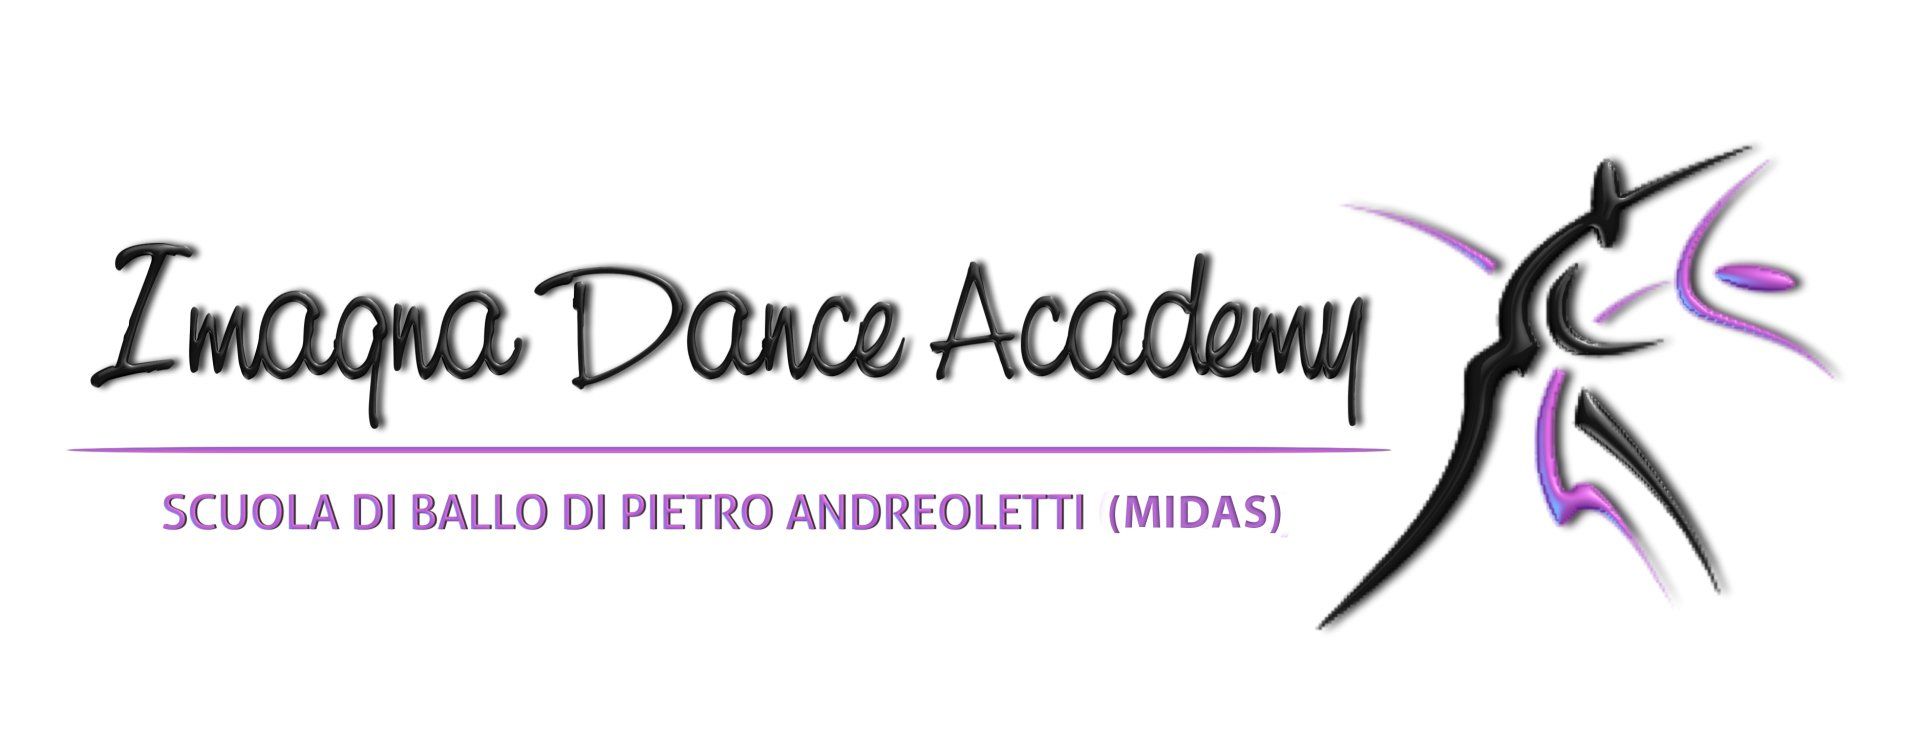 Imagna Danca Academy